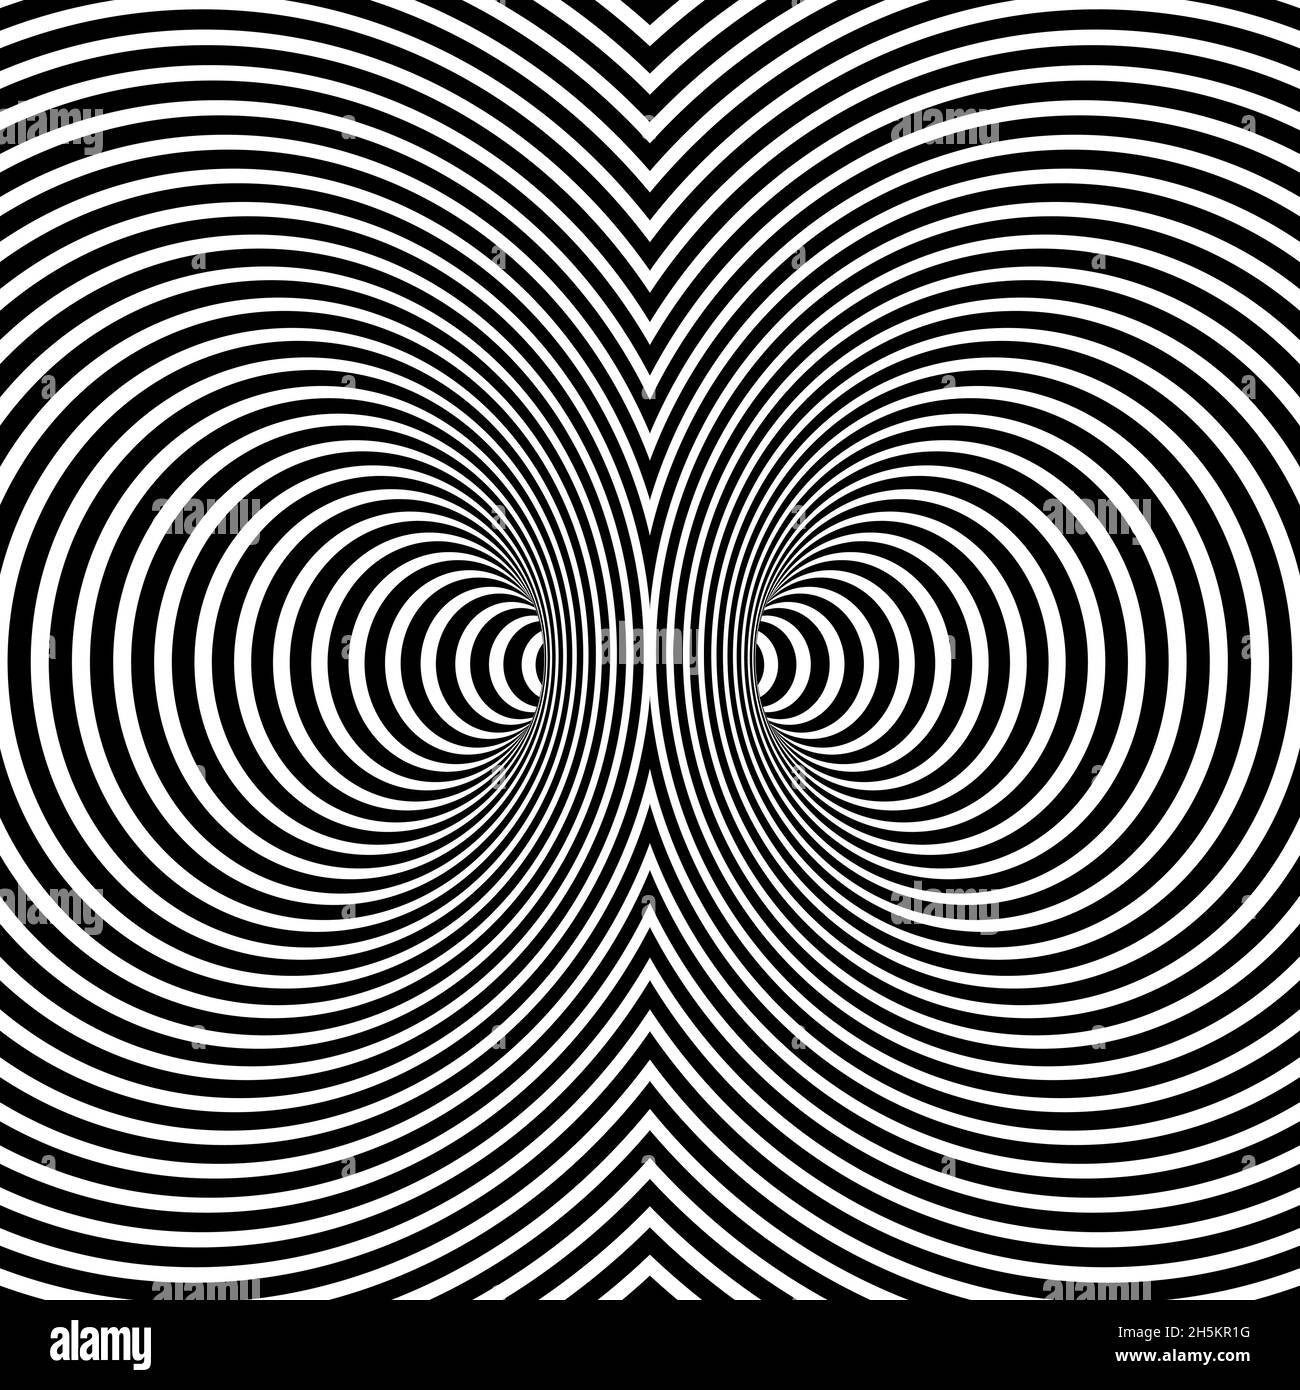 Wormhole illusion optique, dégradé géométrique rouge foncé Abstract Double Worm Hole tunnel, Abstract Twisted Vector illusion 3D Optical Art Illustration de Vecteur